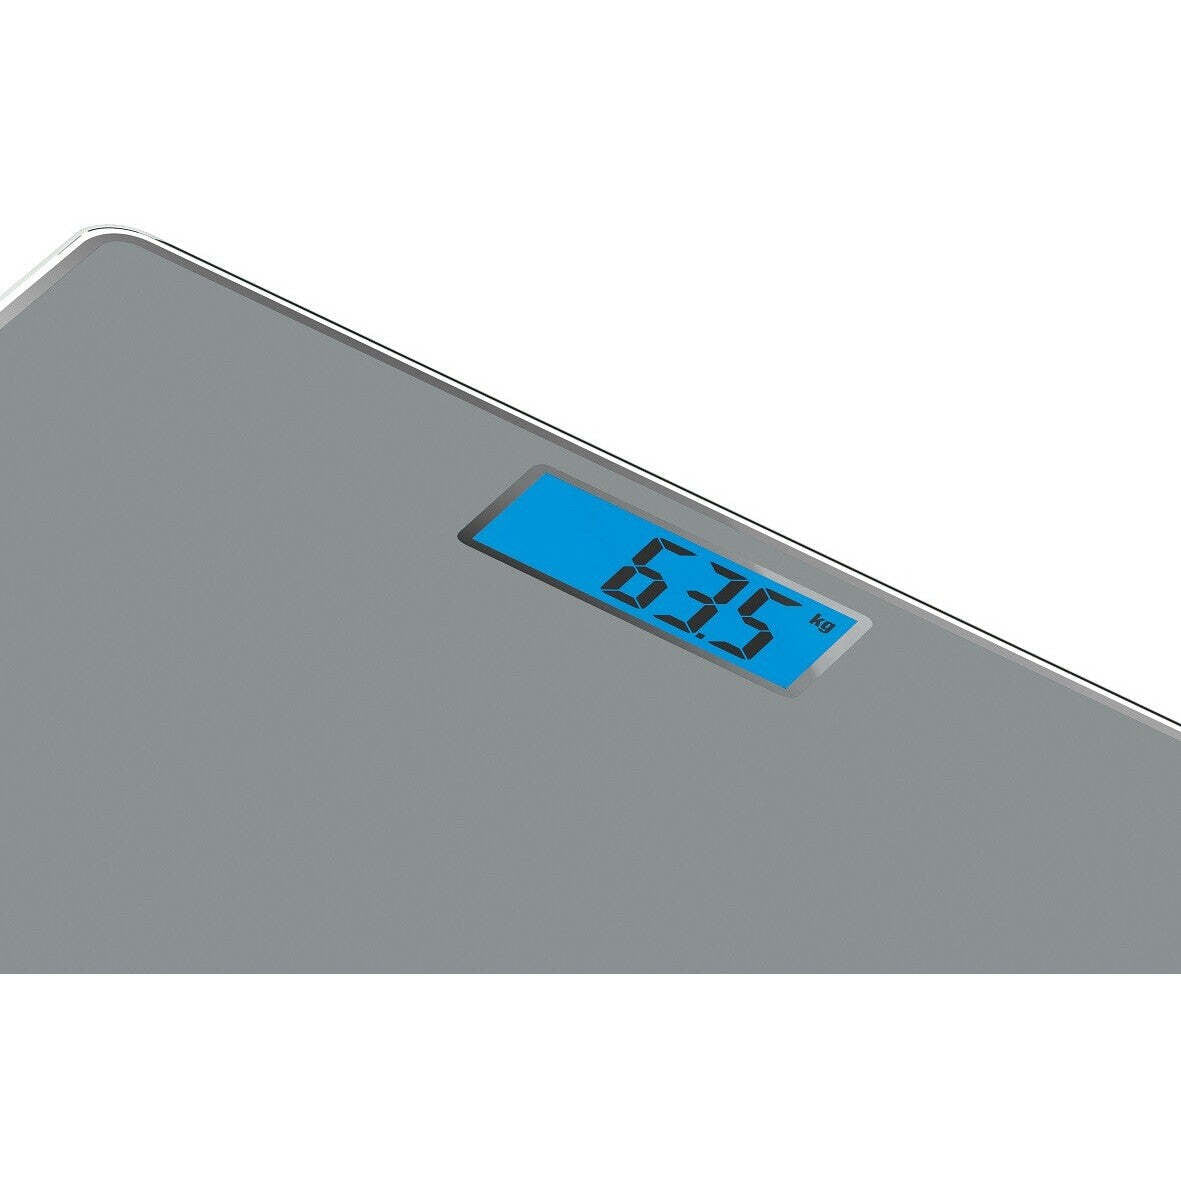 Osobní váha Tefal Classic 2 PP1500V0, 160 kg